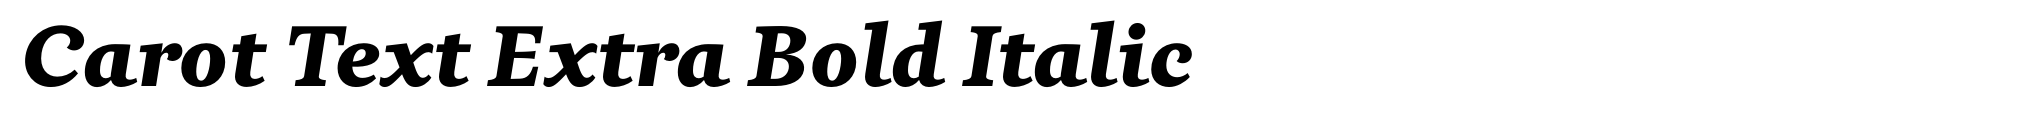 Carot Text Extra Bold Italic image